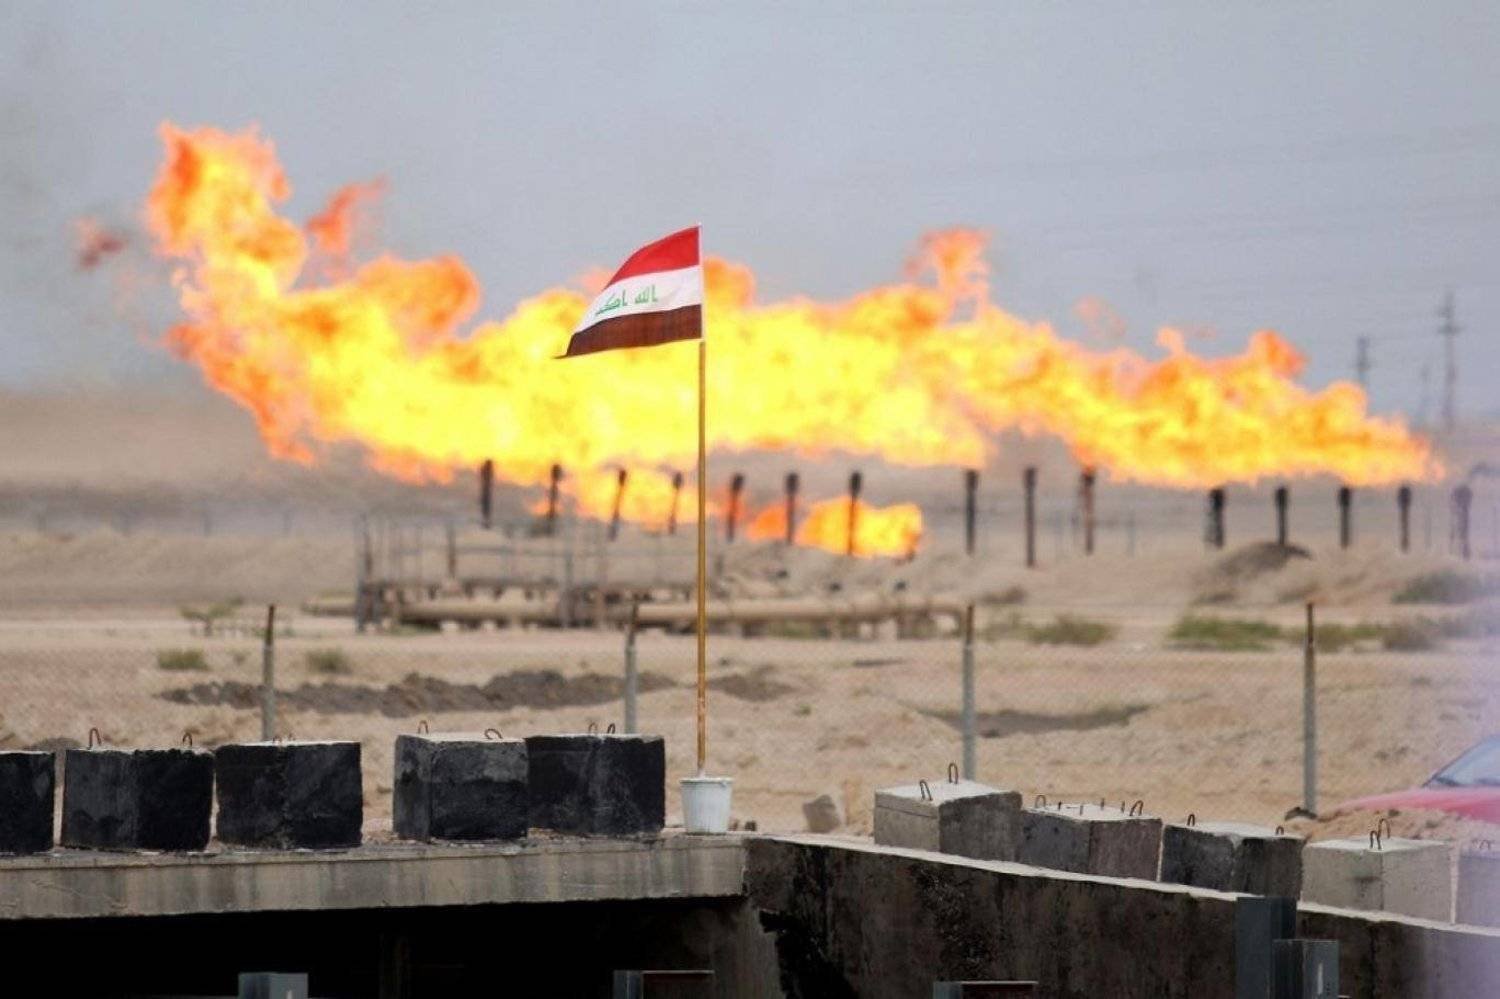 ينفق العراق نحو 25 مليار دولار سنوياً على دعم الطاقة الأولية منها نحو 6 مليارات دولار تذهب لاستيراد الغاز الإيراني (أ.ف.ب)